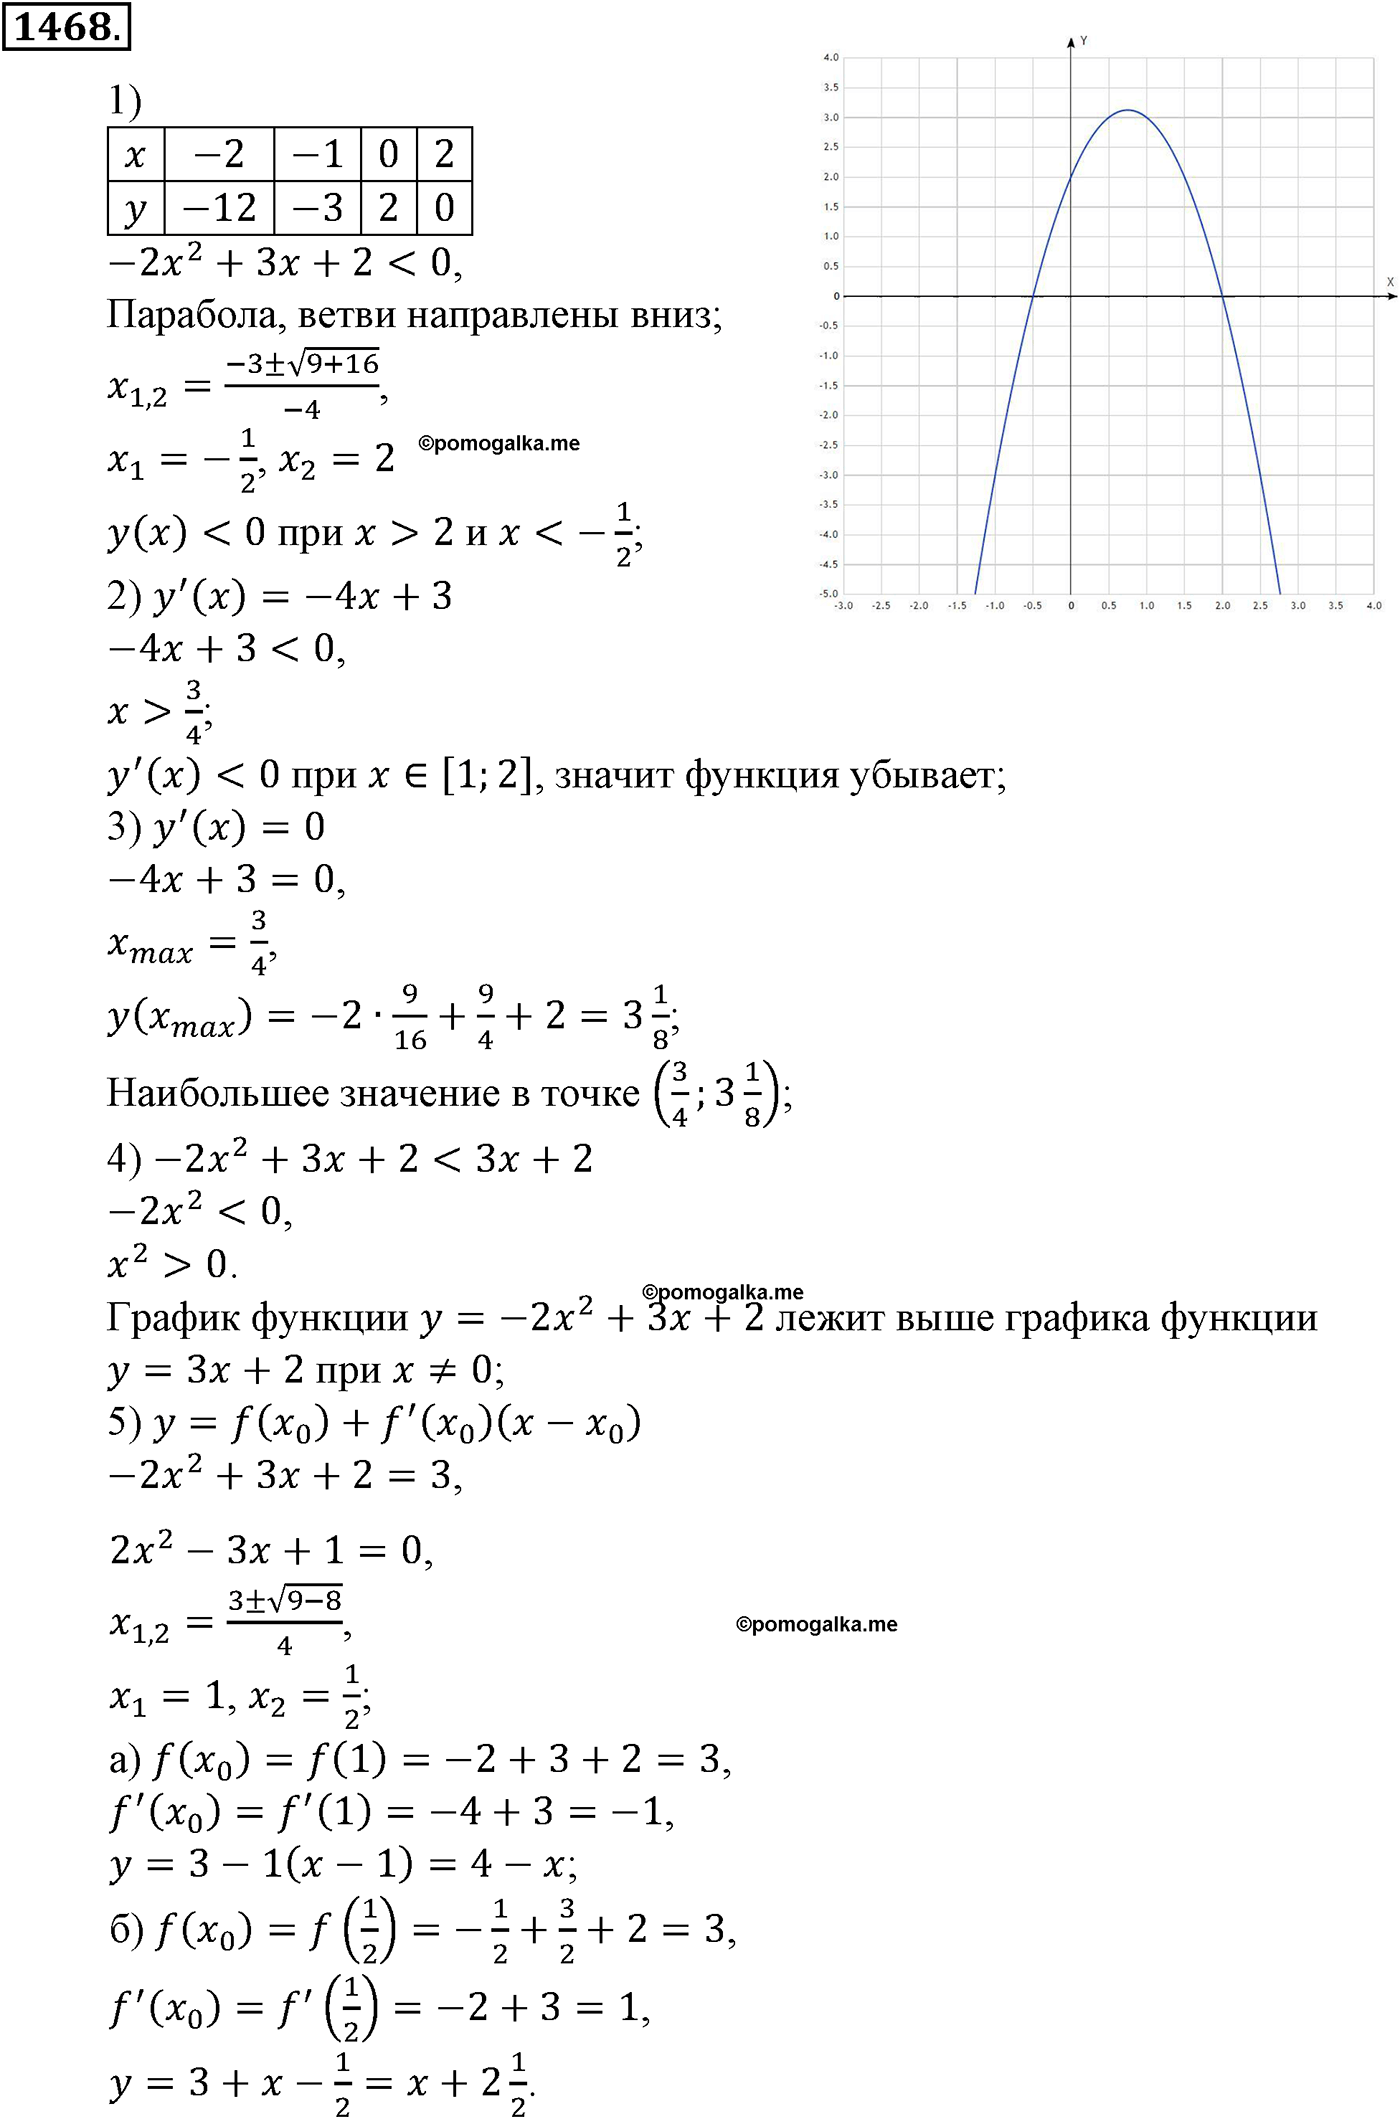 разбор задачи №1468 по алгебре за 10-11 класс из учебника Алимова, Колягина